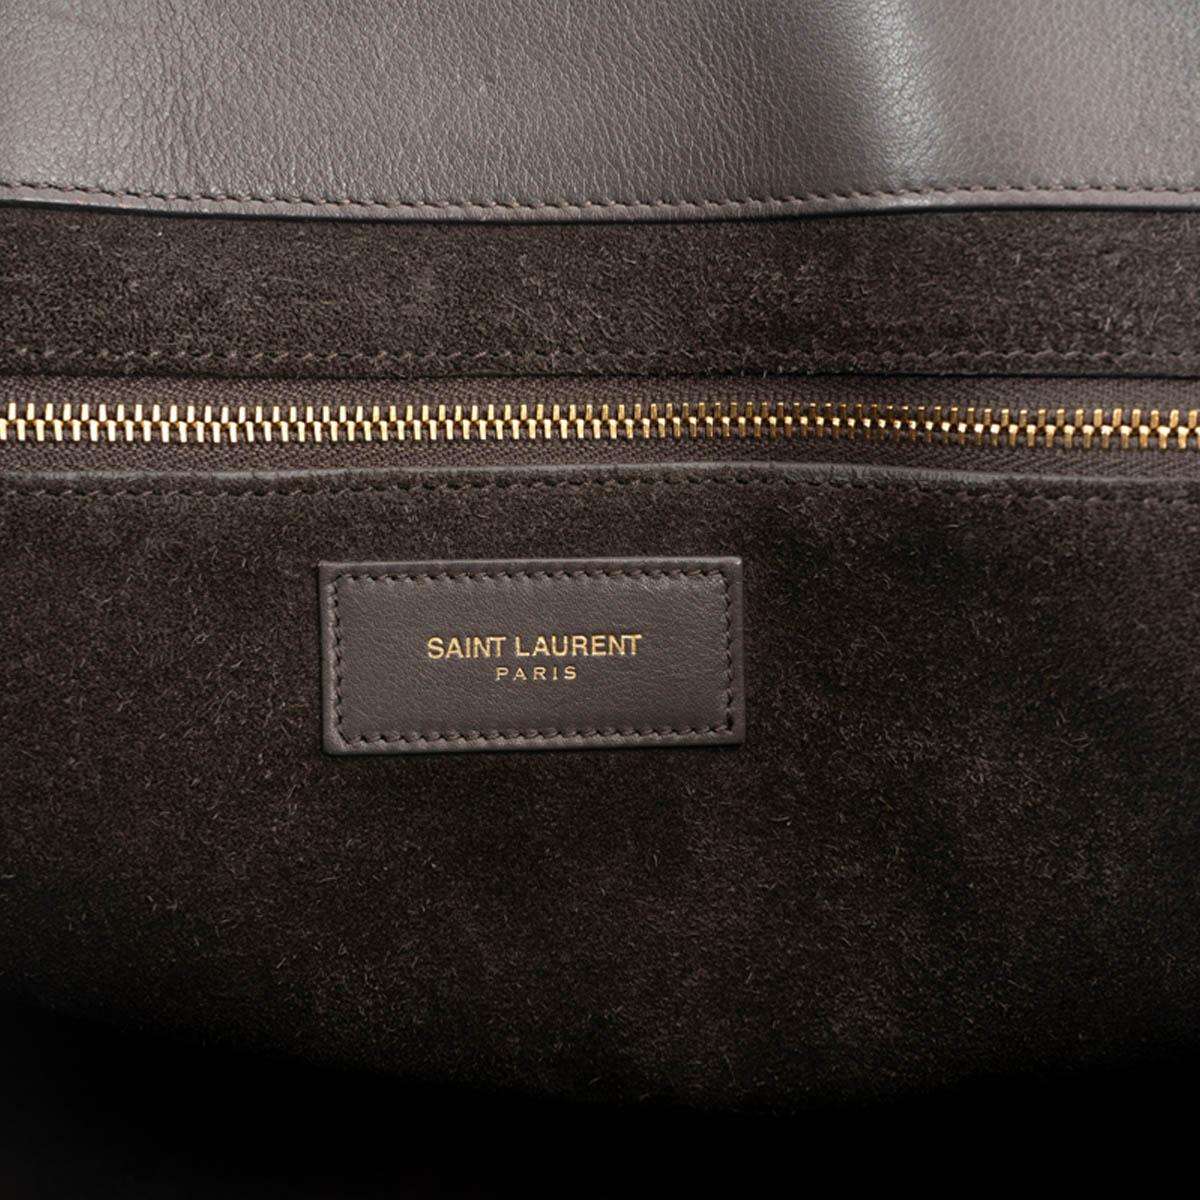 SAINT LAURENT grey leather LARGE SAC DE JOUR Tote Bag For Sale 2